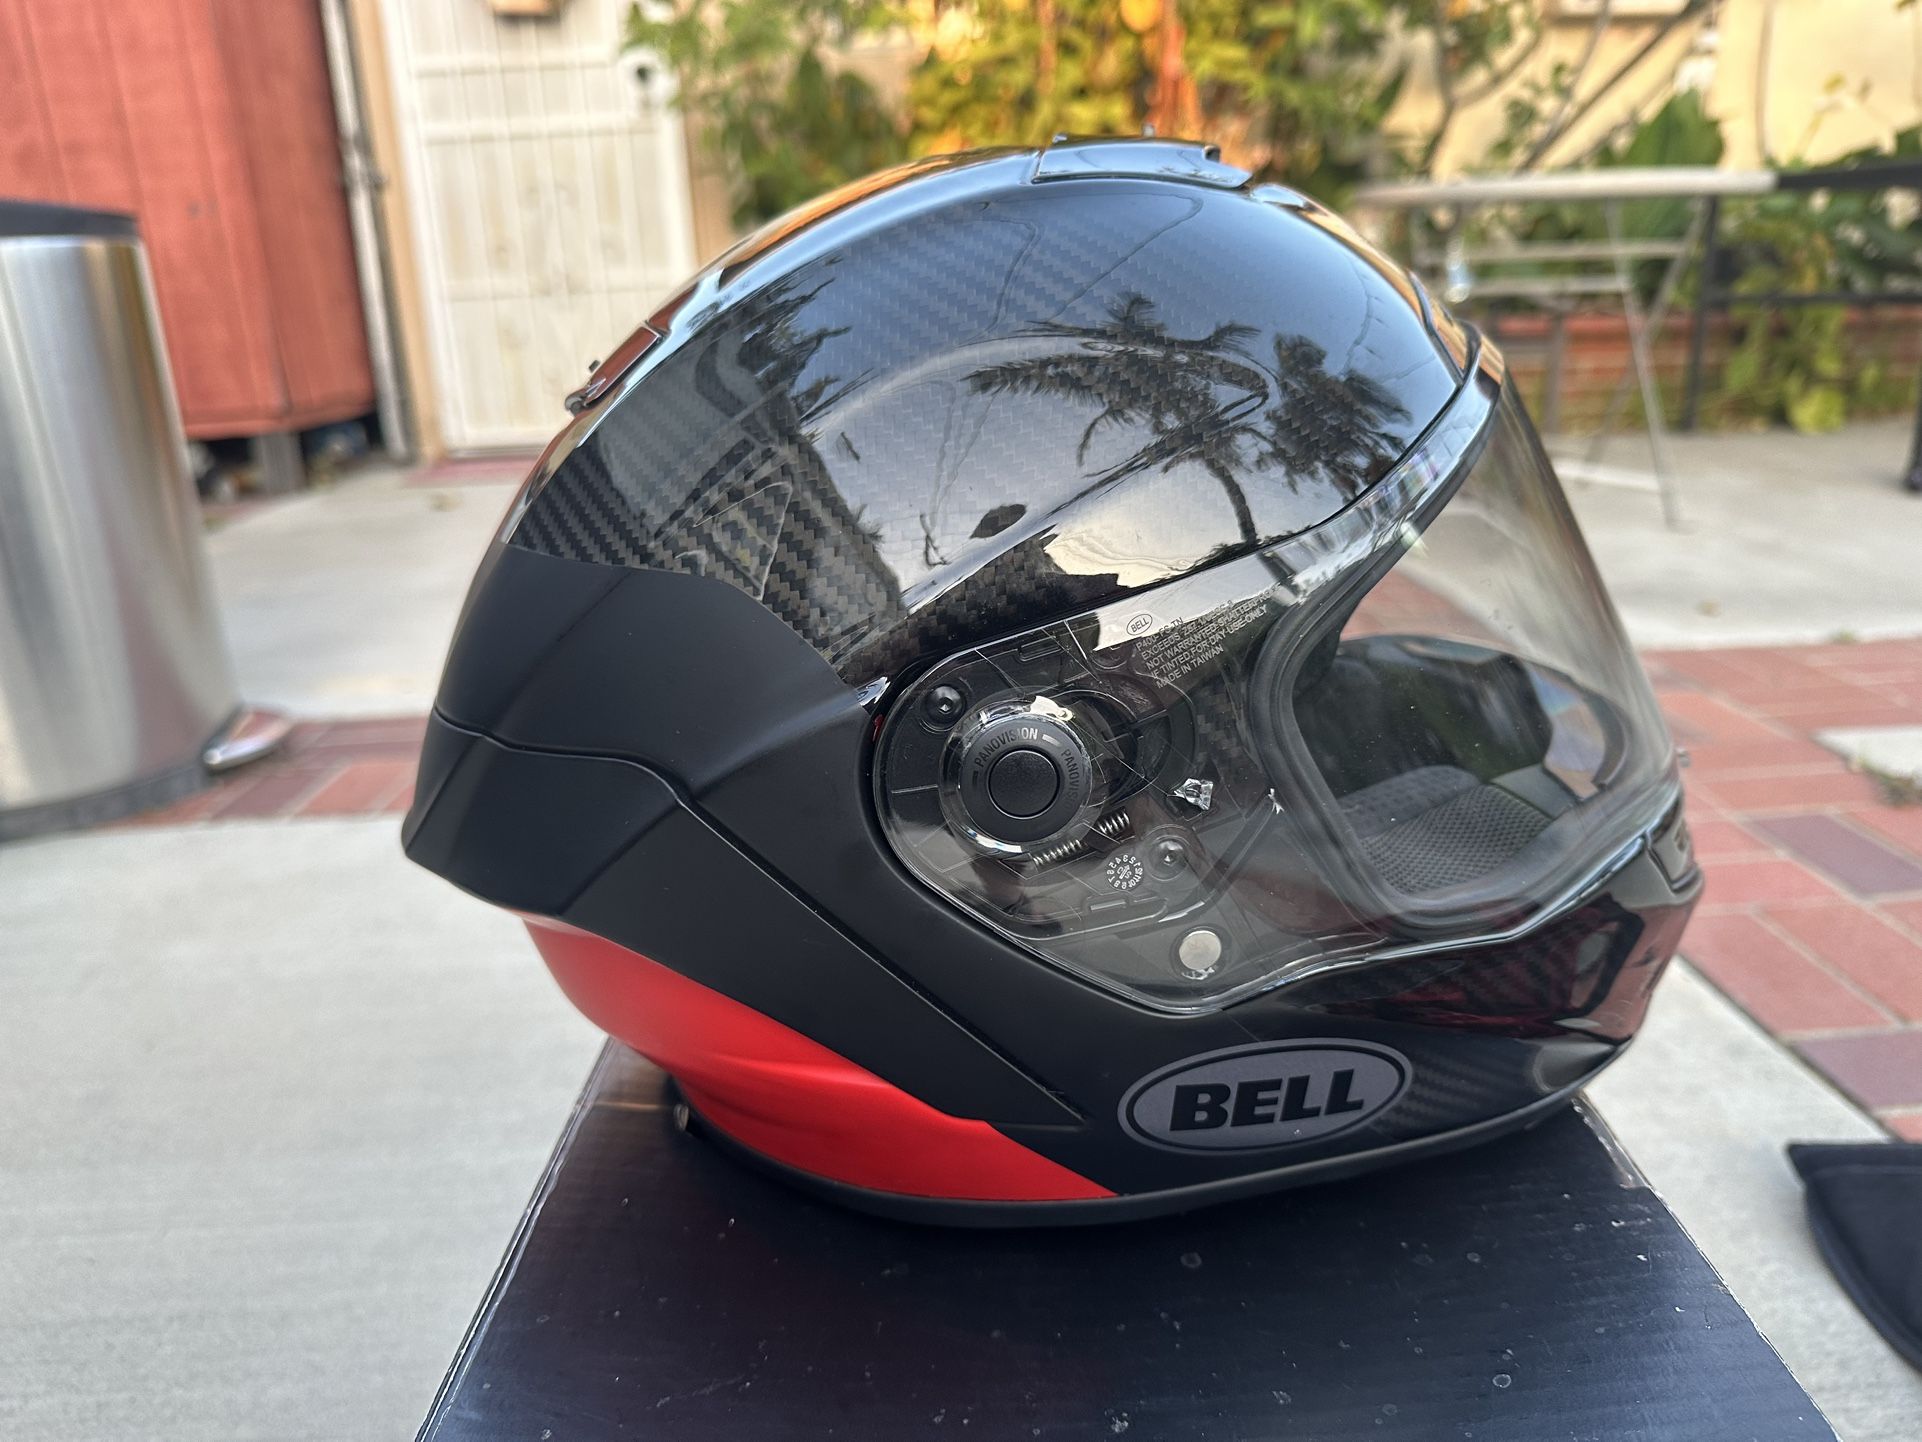 BELL Motorcycle Helmet 